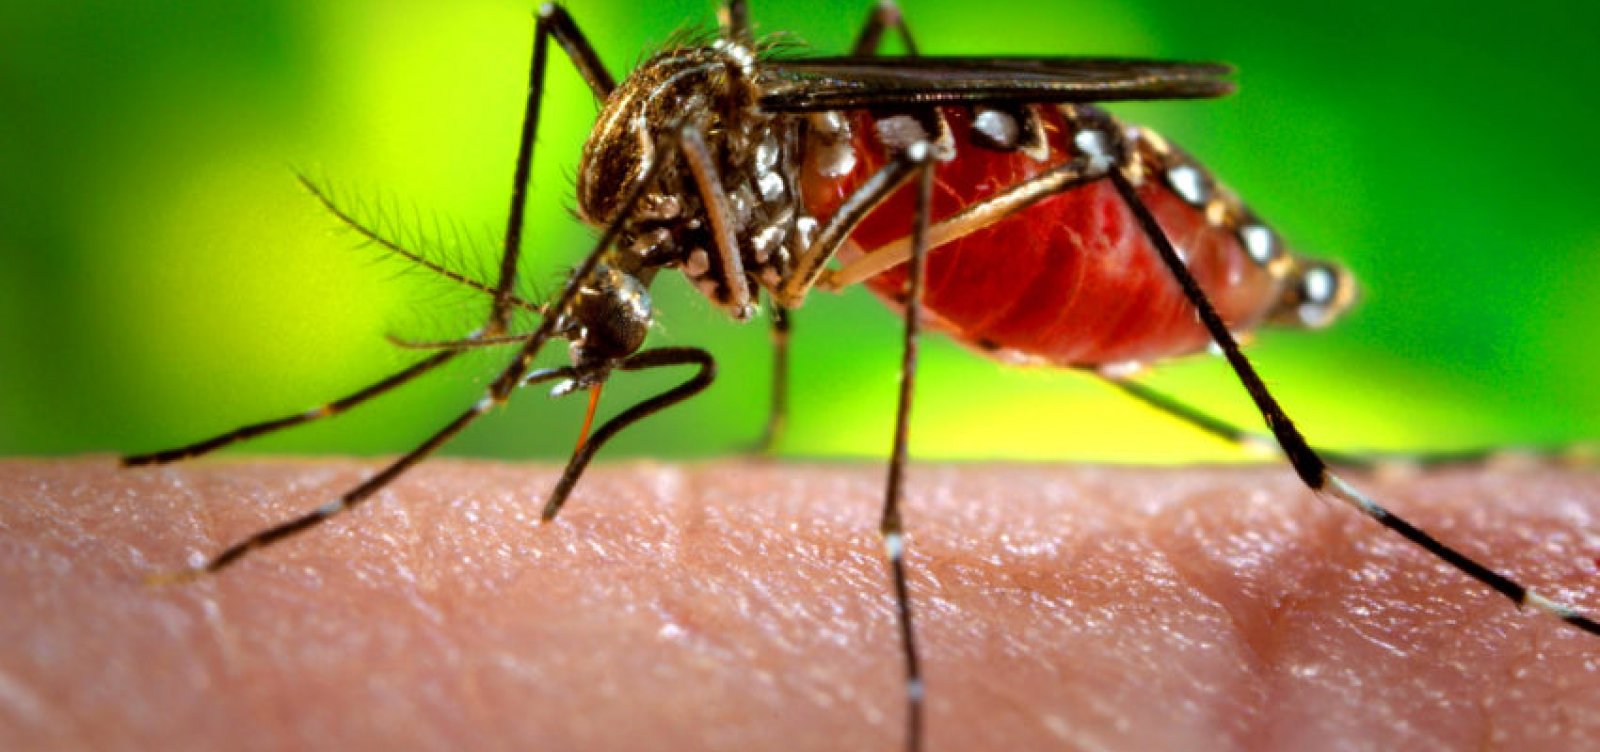 Instituto Butantan obtém patente para produção de vacina contra dengue